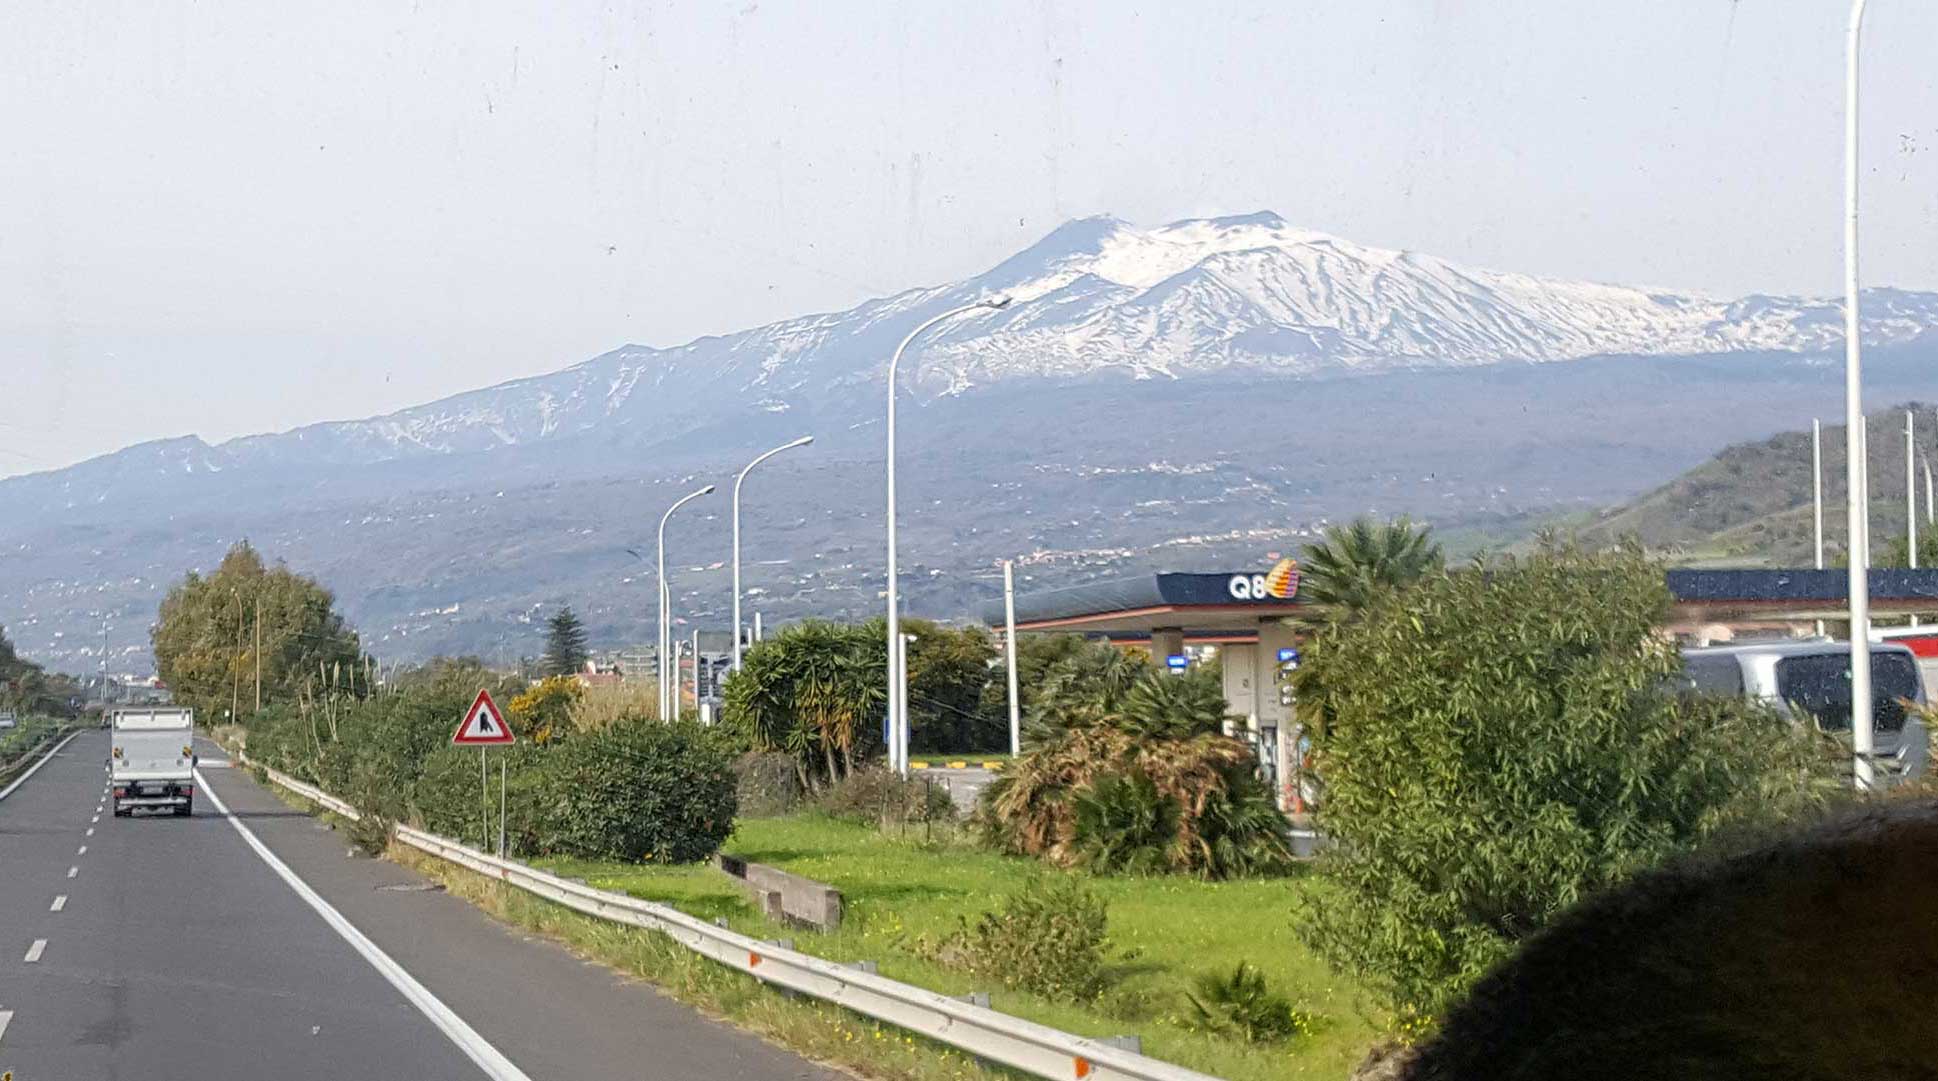 Approaching Mt. Etna